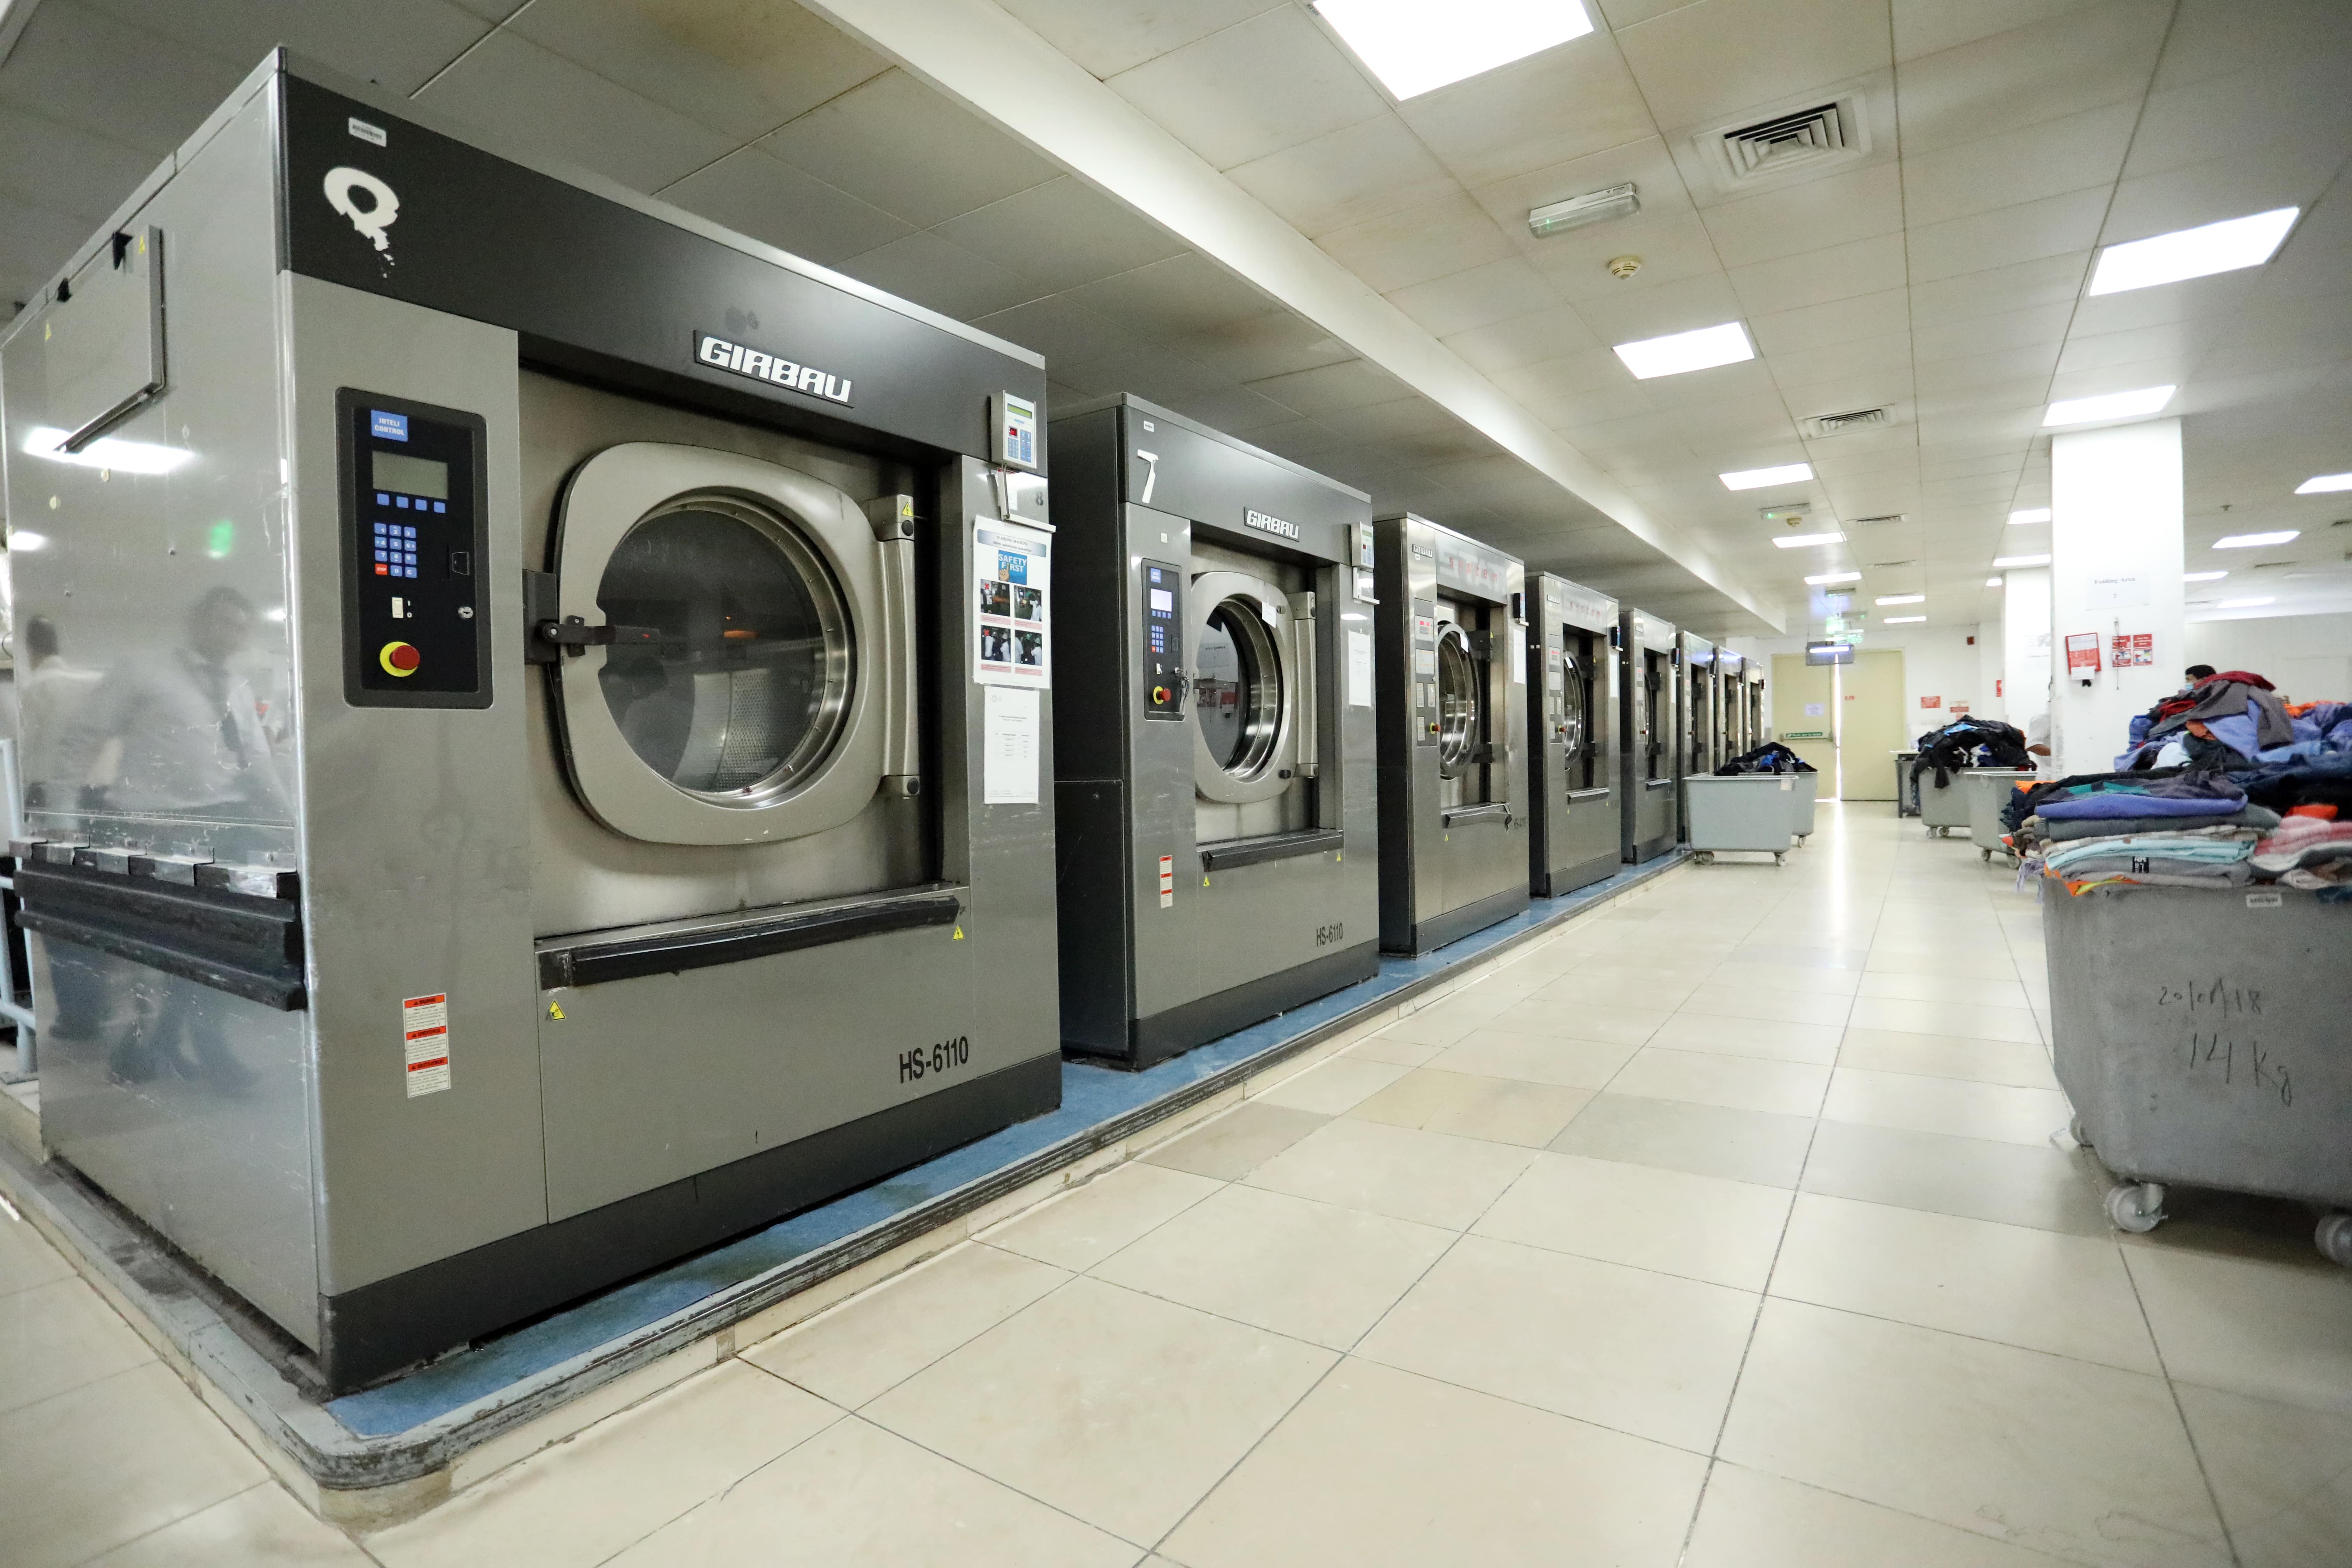 AlRaha Automatic Laundry Service